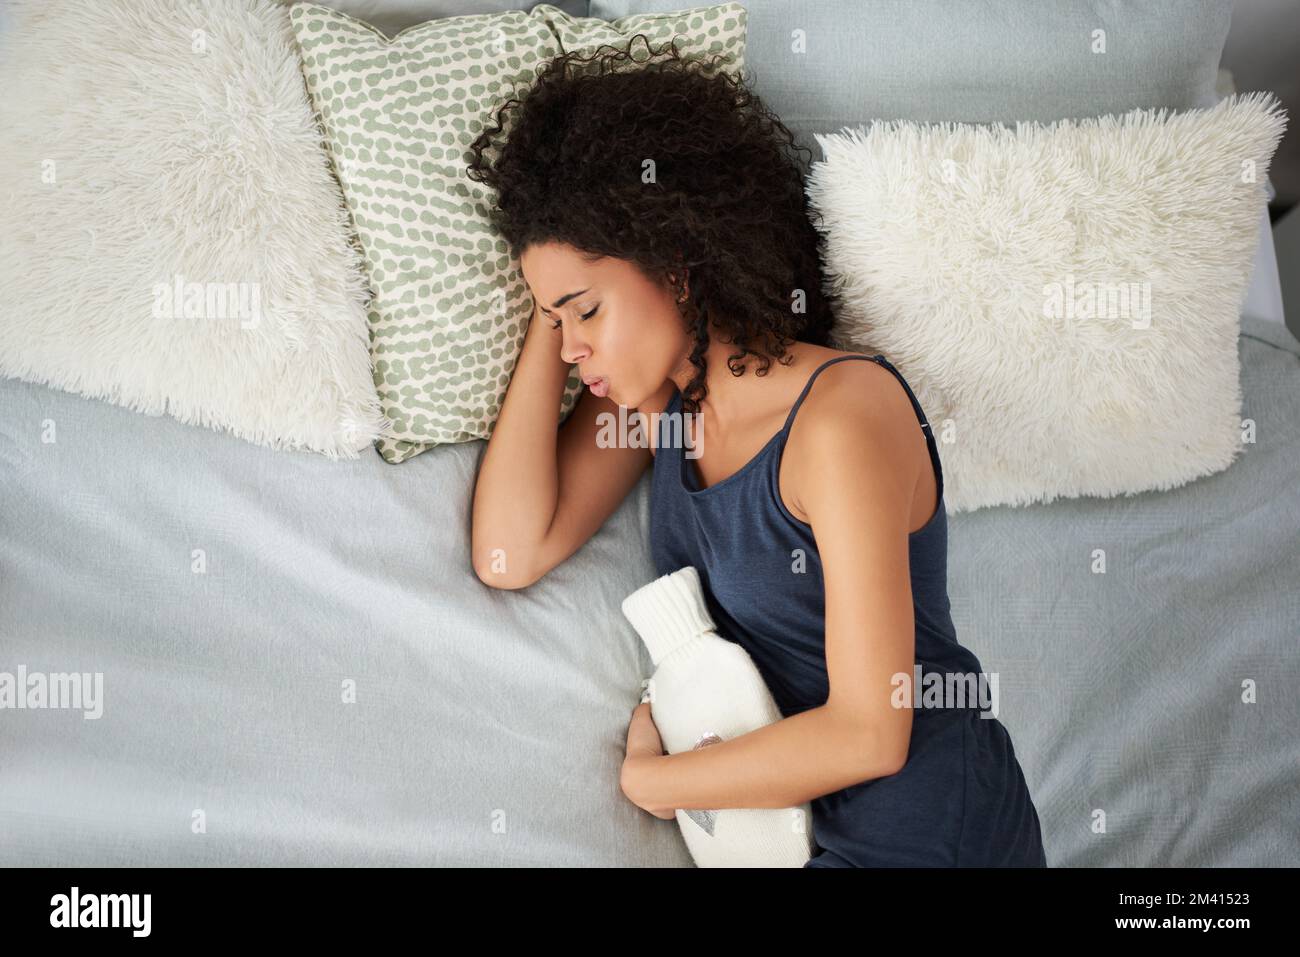 Durch den Schmerz atmen. Eine attraktive junge Frau, die unter Periodenkrämpfen leidet, während sie mit einer Wärmflasche im Bett liegt. Stockfoto